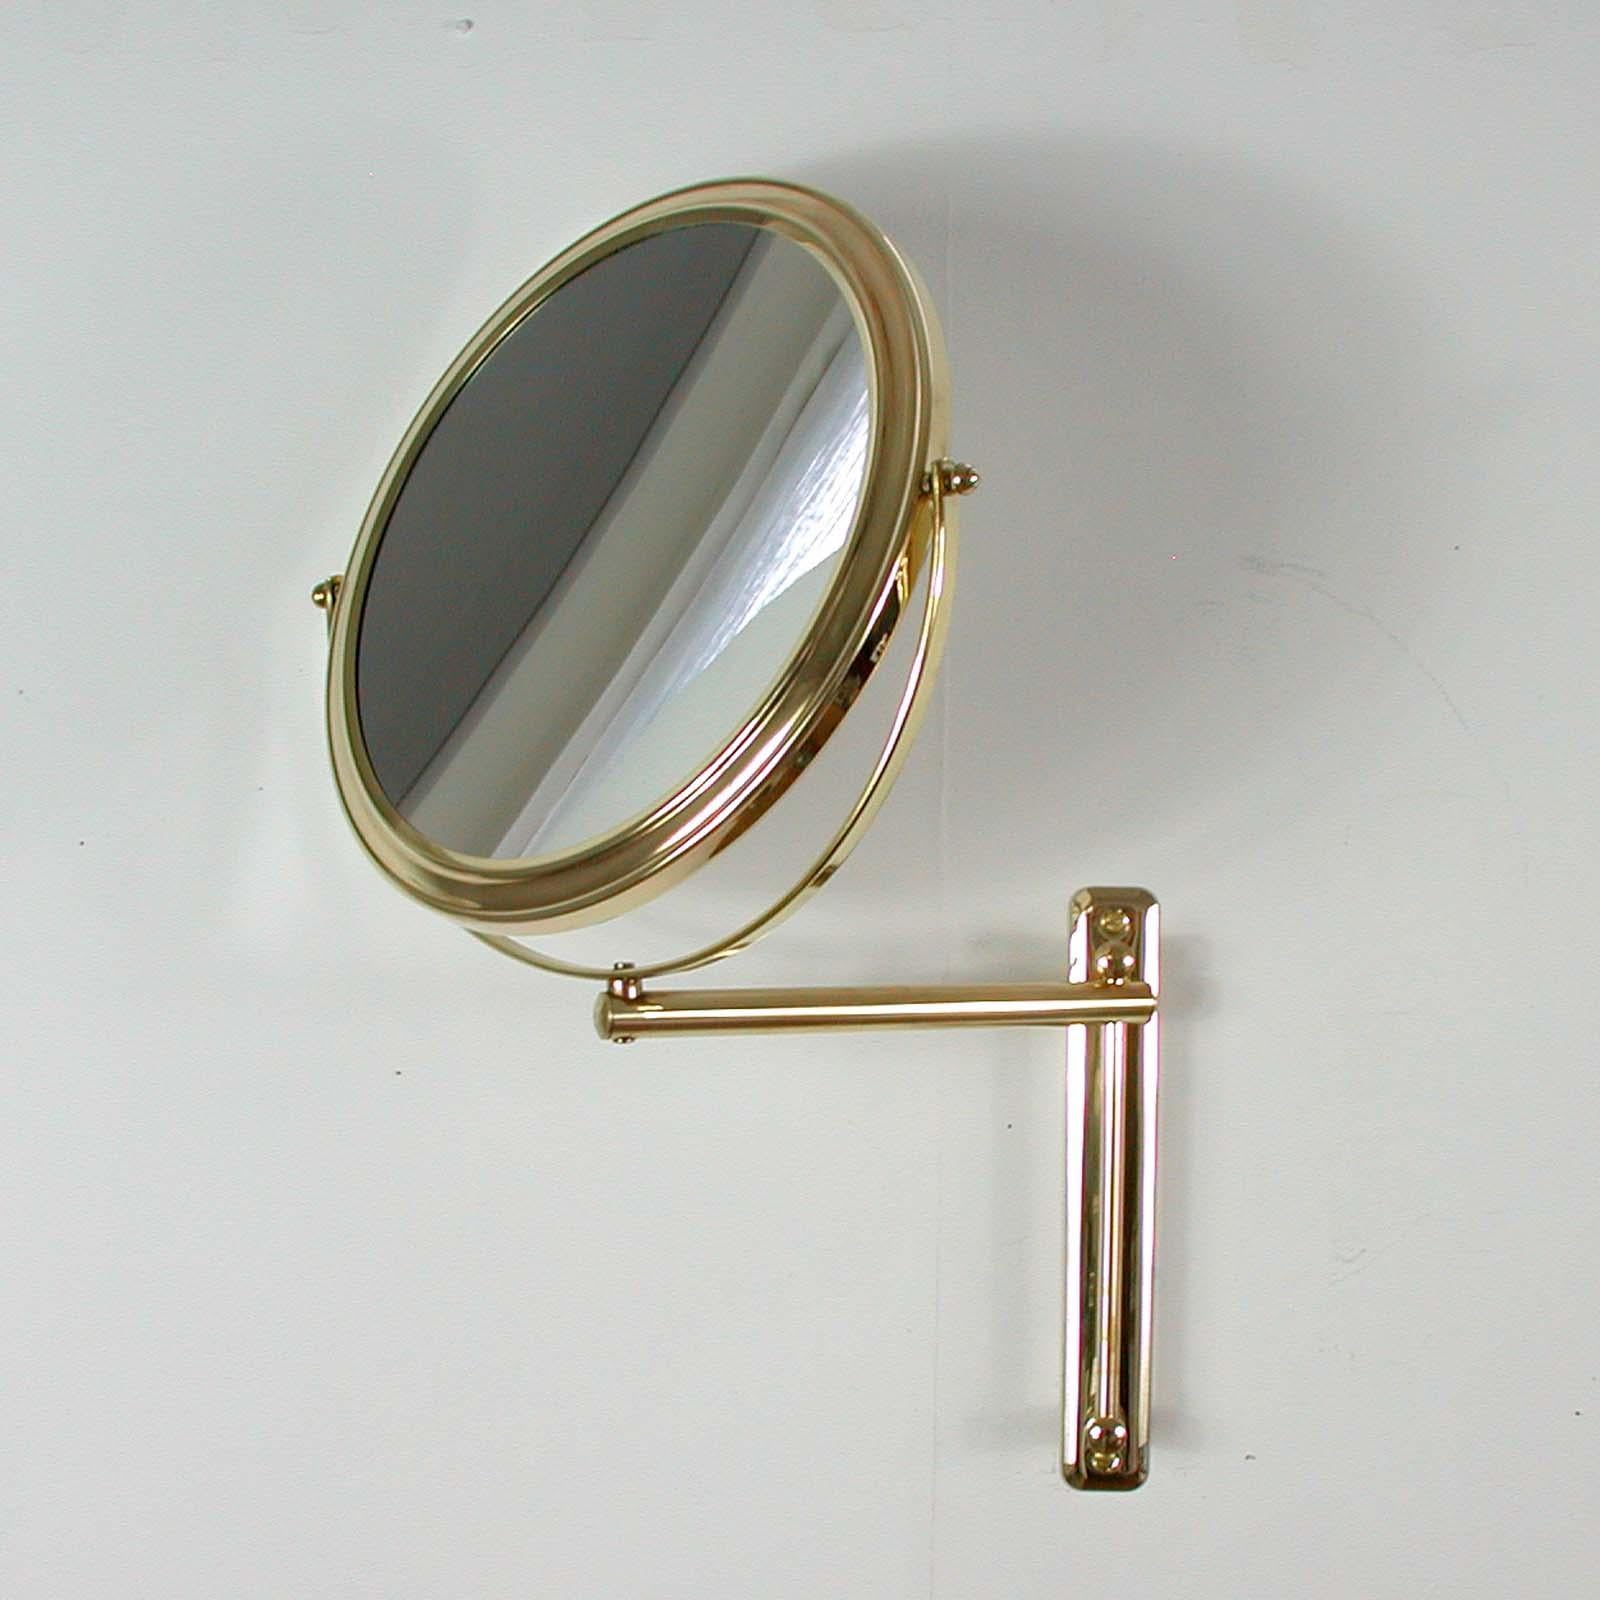 Dieser elegante runde Kosmetikspiegel wurde in den 1950er bis 1960er Jahren in Italien entworfen und hergestellt. Sie hat einen runden Messingrahmen und einen Wandarm aus Messing. Der Spiegel ist höhenverstellbar. Er kann auch von links nach rechts